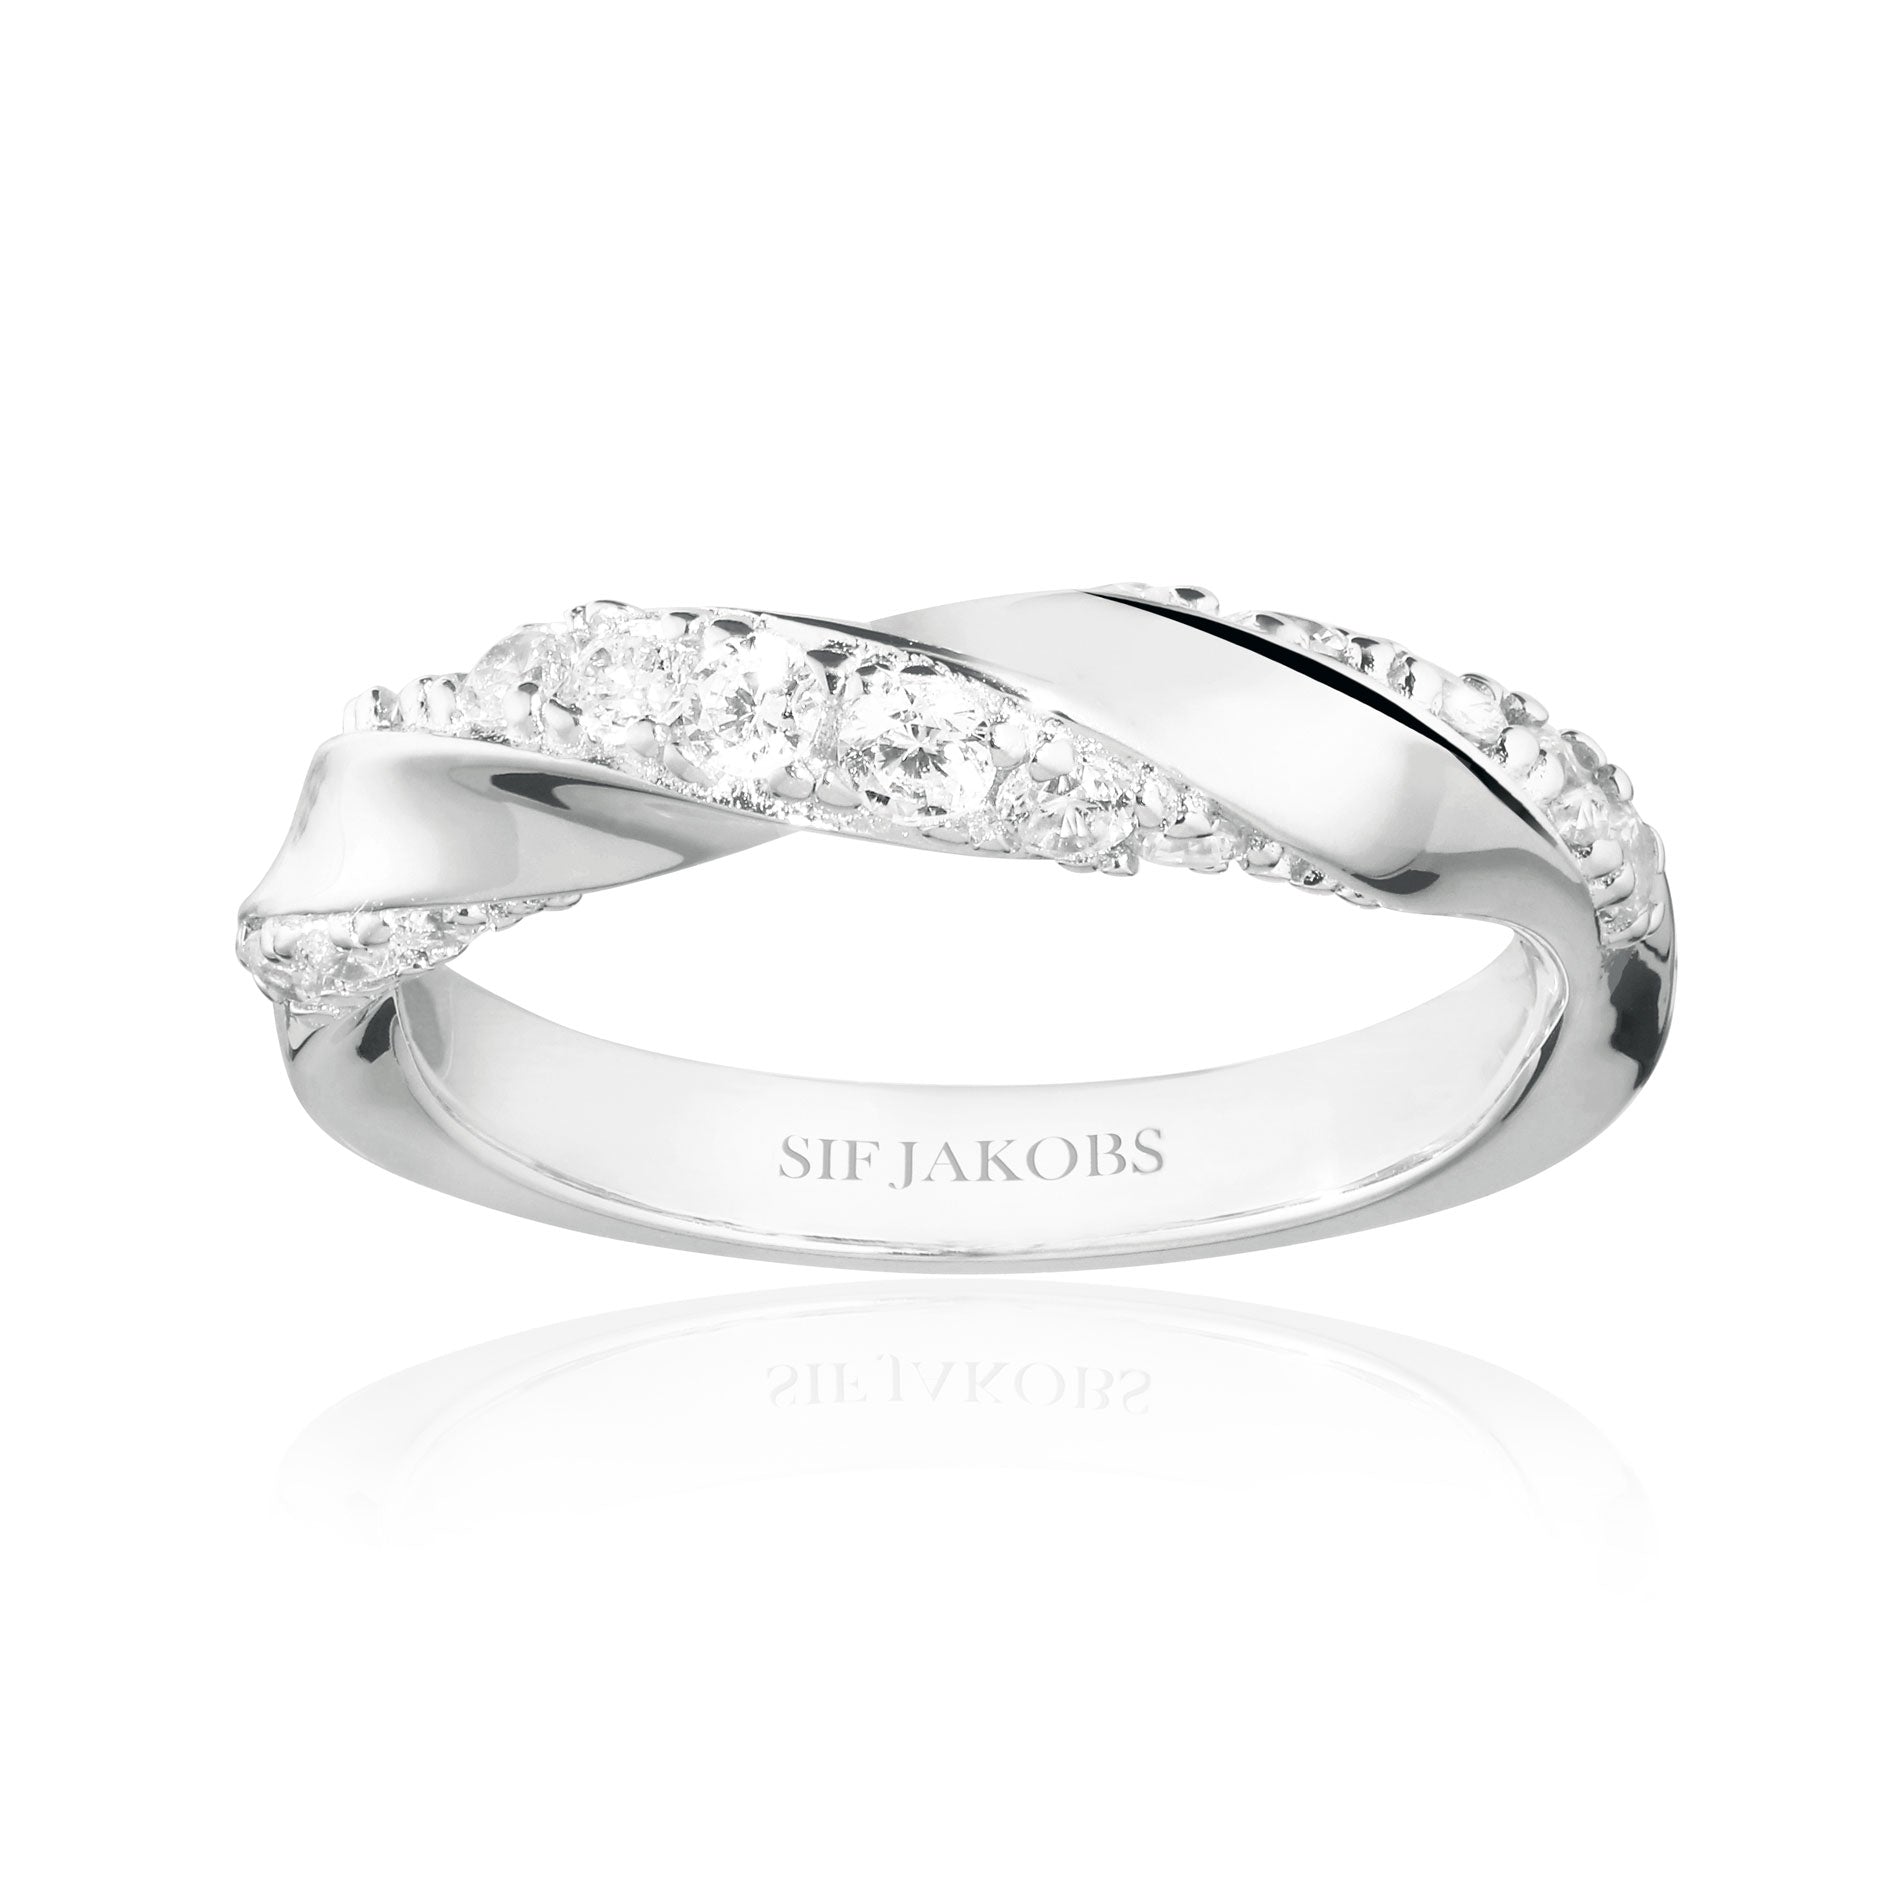 Sif Jakobs Ferrara ring i sølv med hvide zirkonia